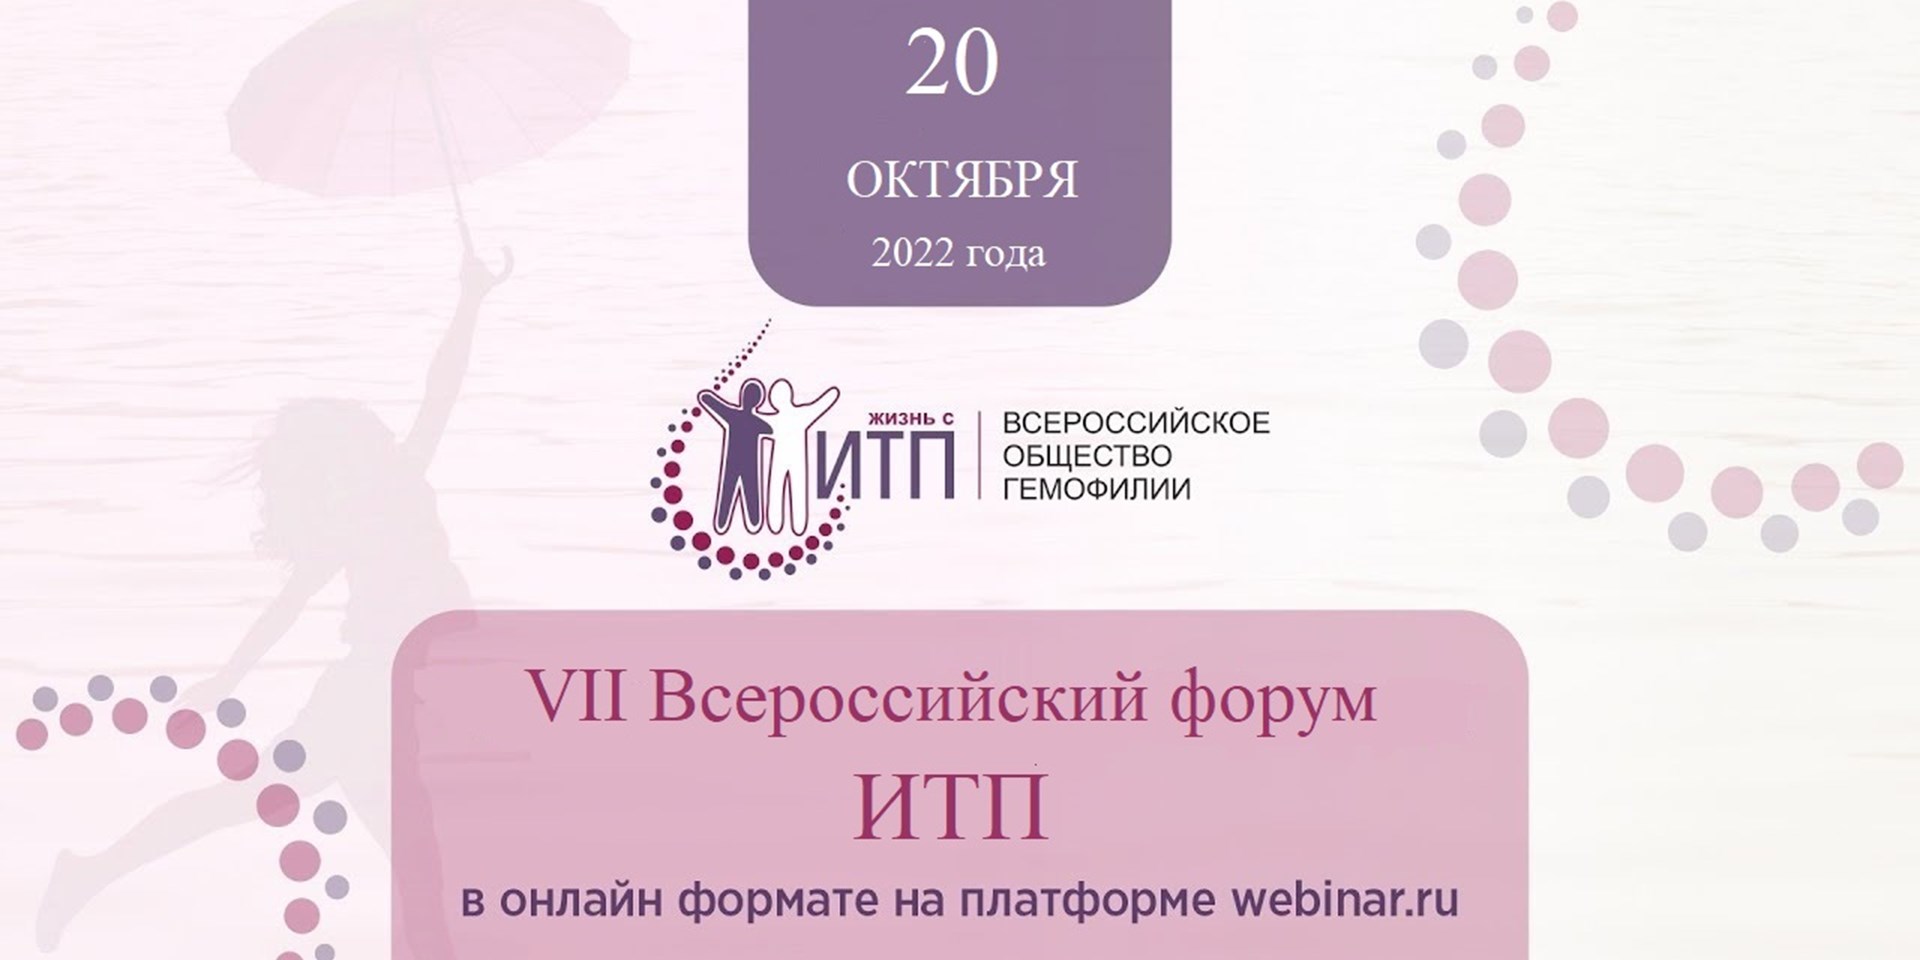 20 октября 2022 года состоится VII Всероссийский форум ИТП